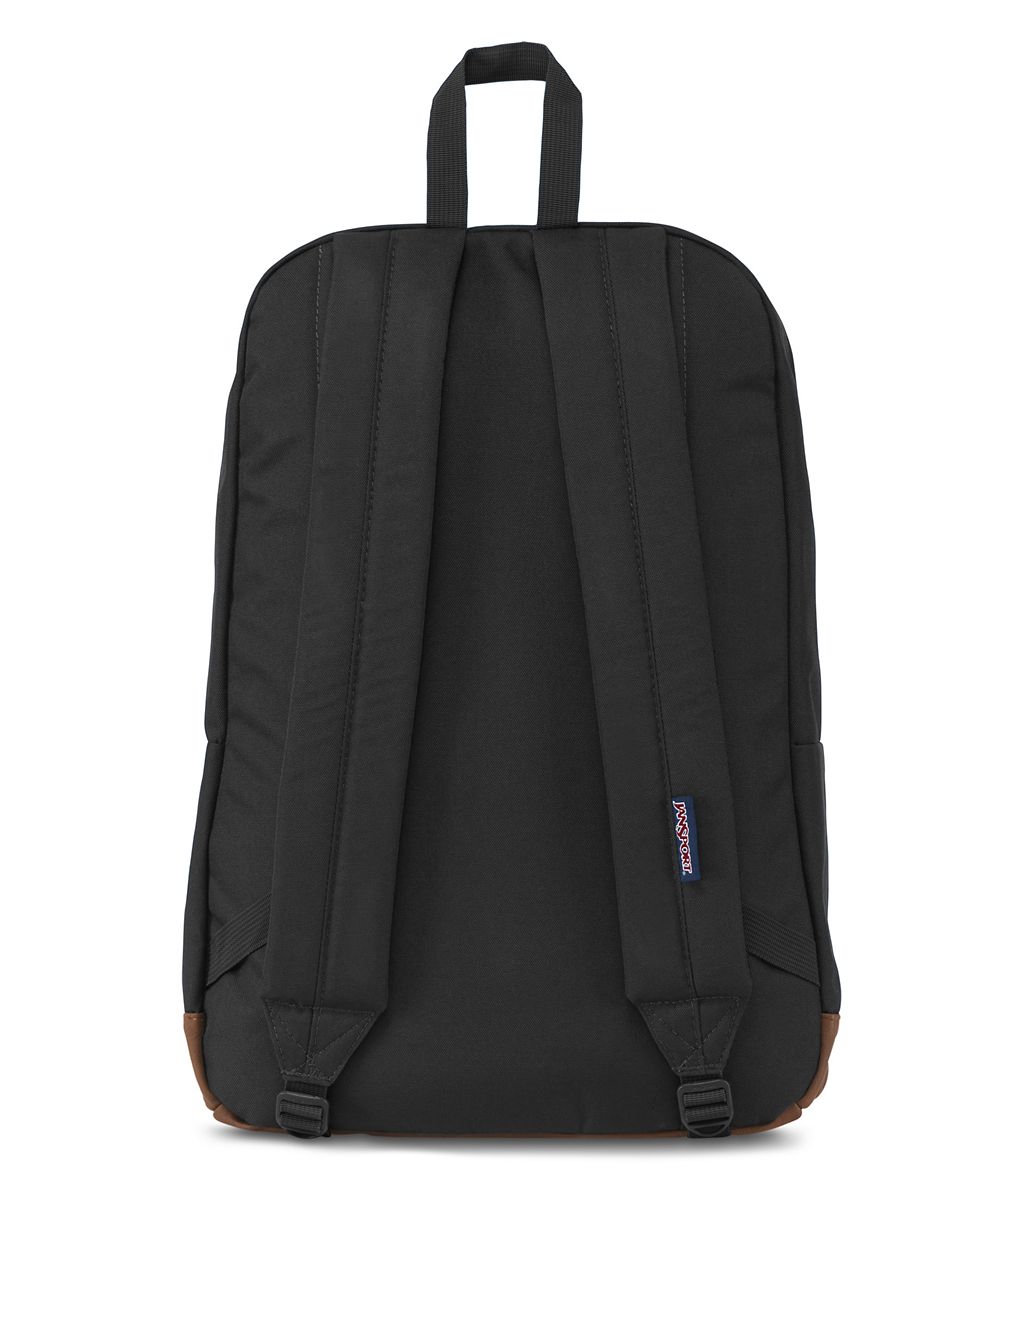 Cortlandt Multi Pocket Backpack 4 of 4